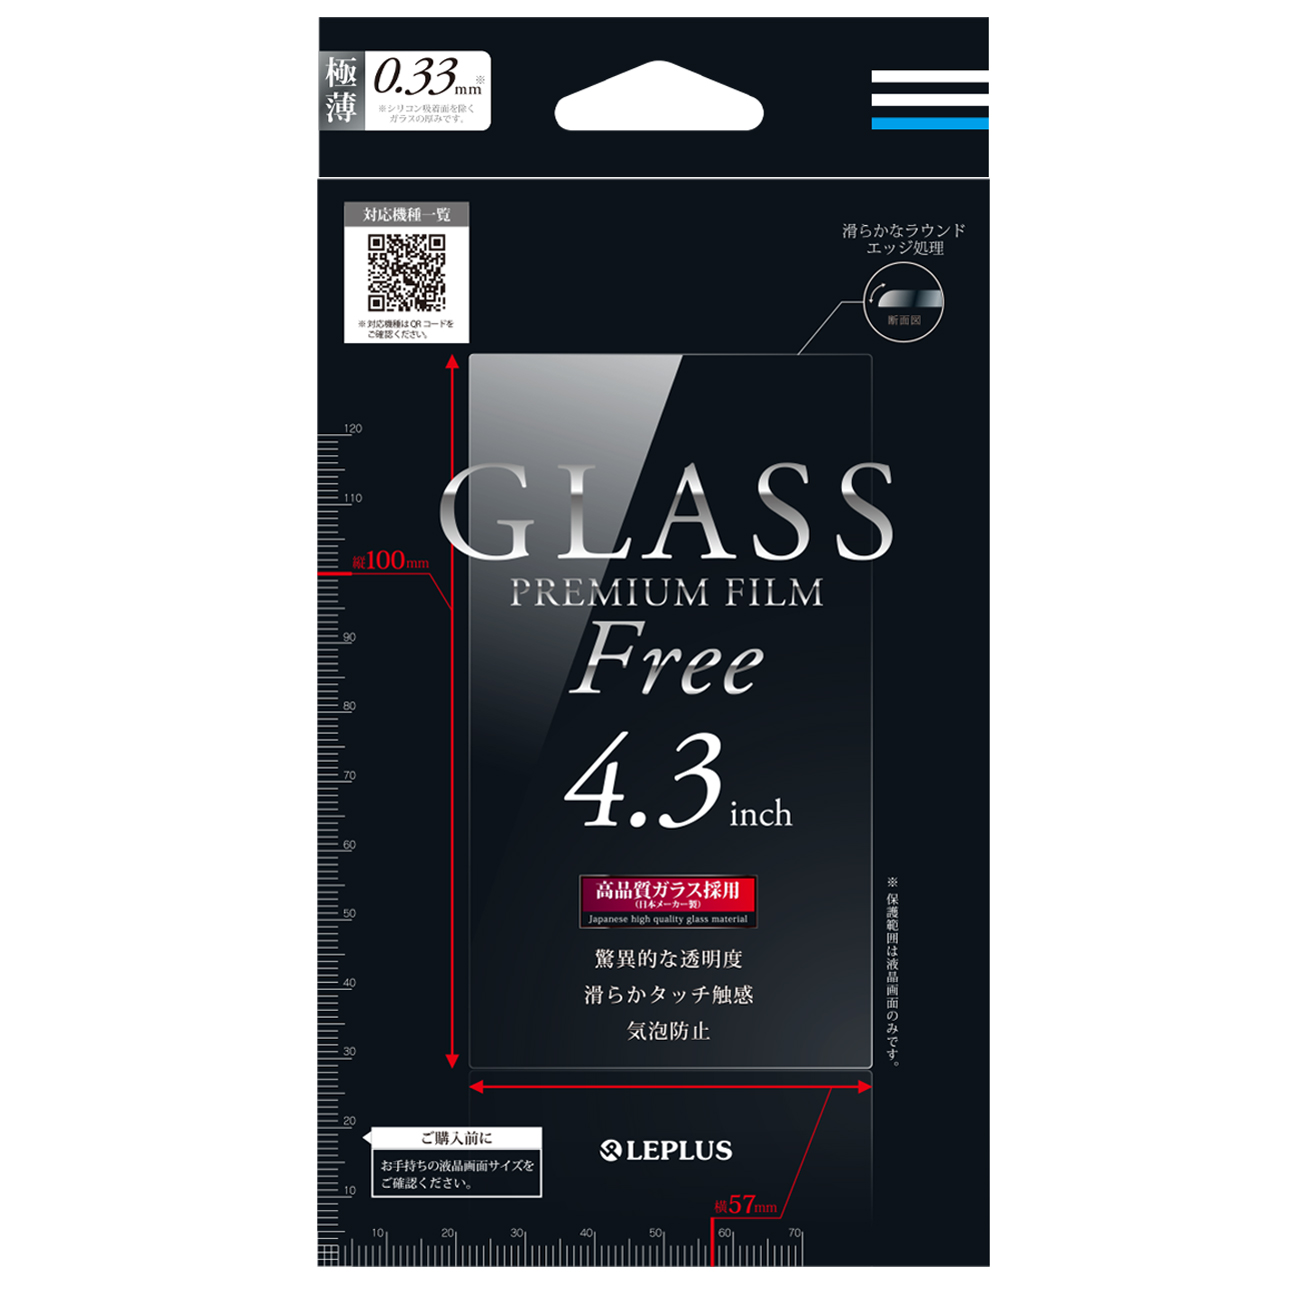 【140万枚を超える販売実績】様々な端末に対応する汎用ガラスフィルムを発売！！ガラスフィルム140万枚を超える販売実績を持つMSソリューションズが汎用ガラスフィルム「GLASS Premium Film for スマートフォン」を発売！！